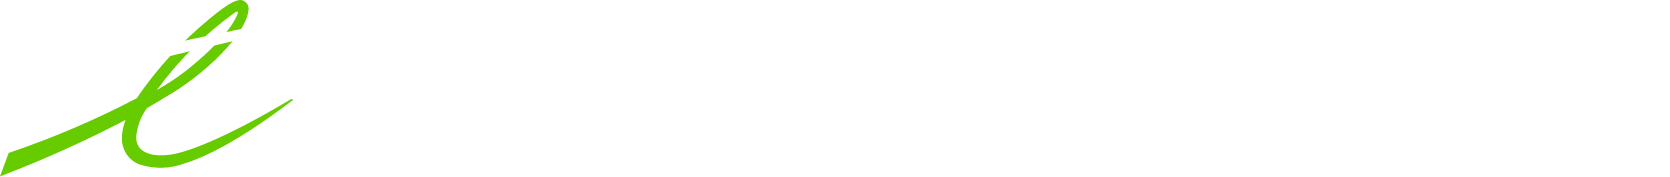 Telus International logo grand pour les fonds sombres (PNG transparent)